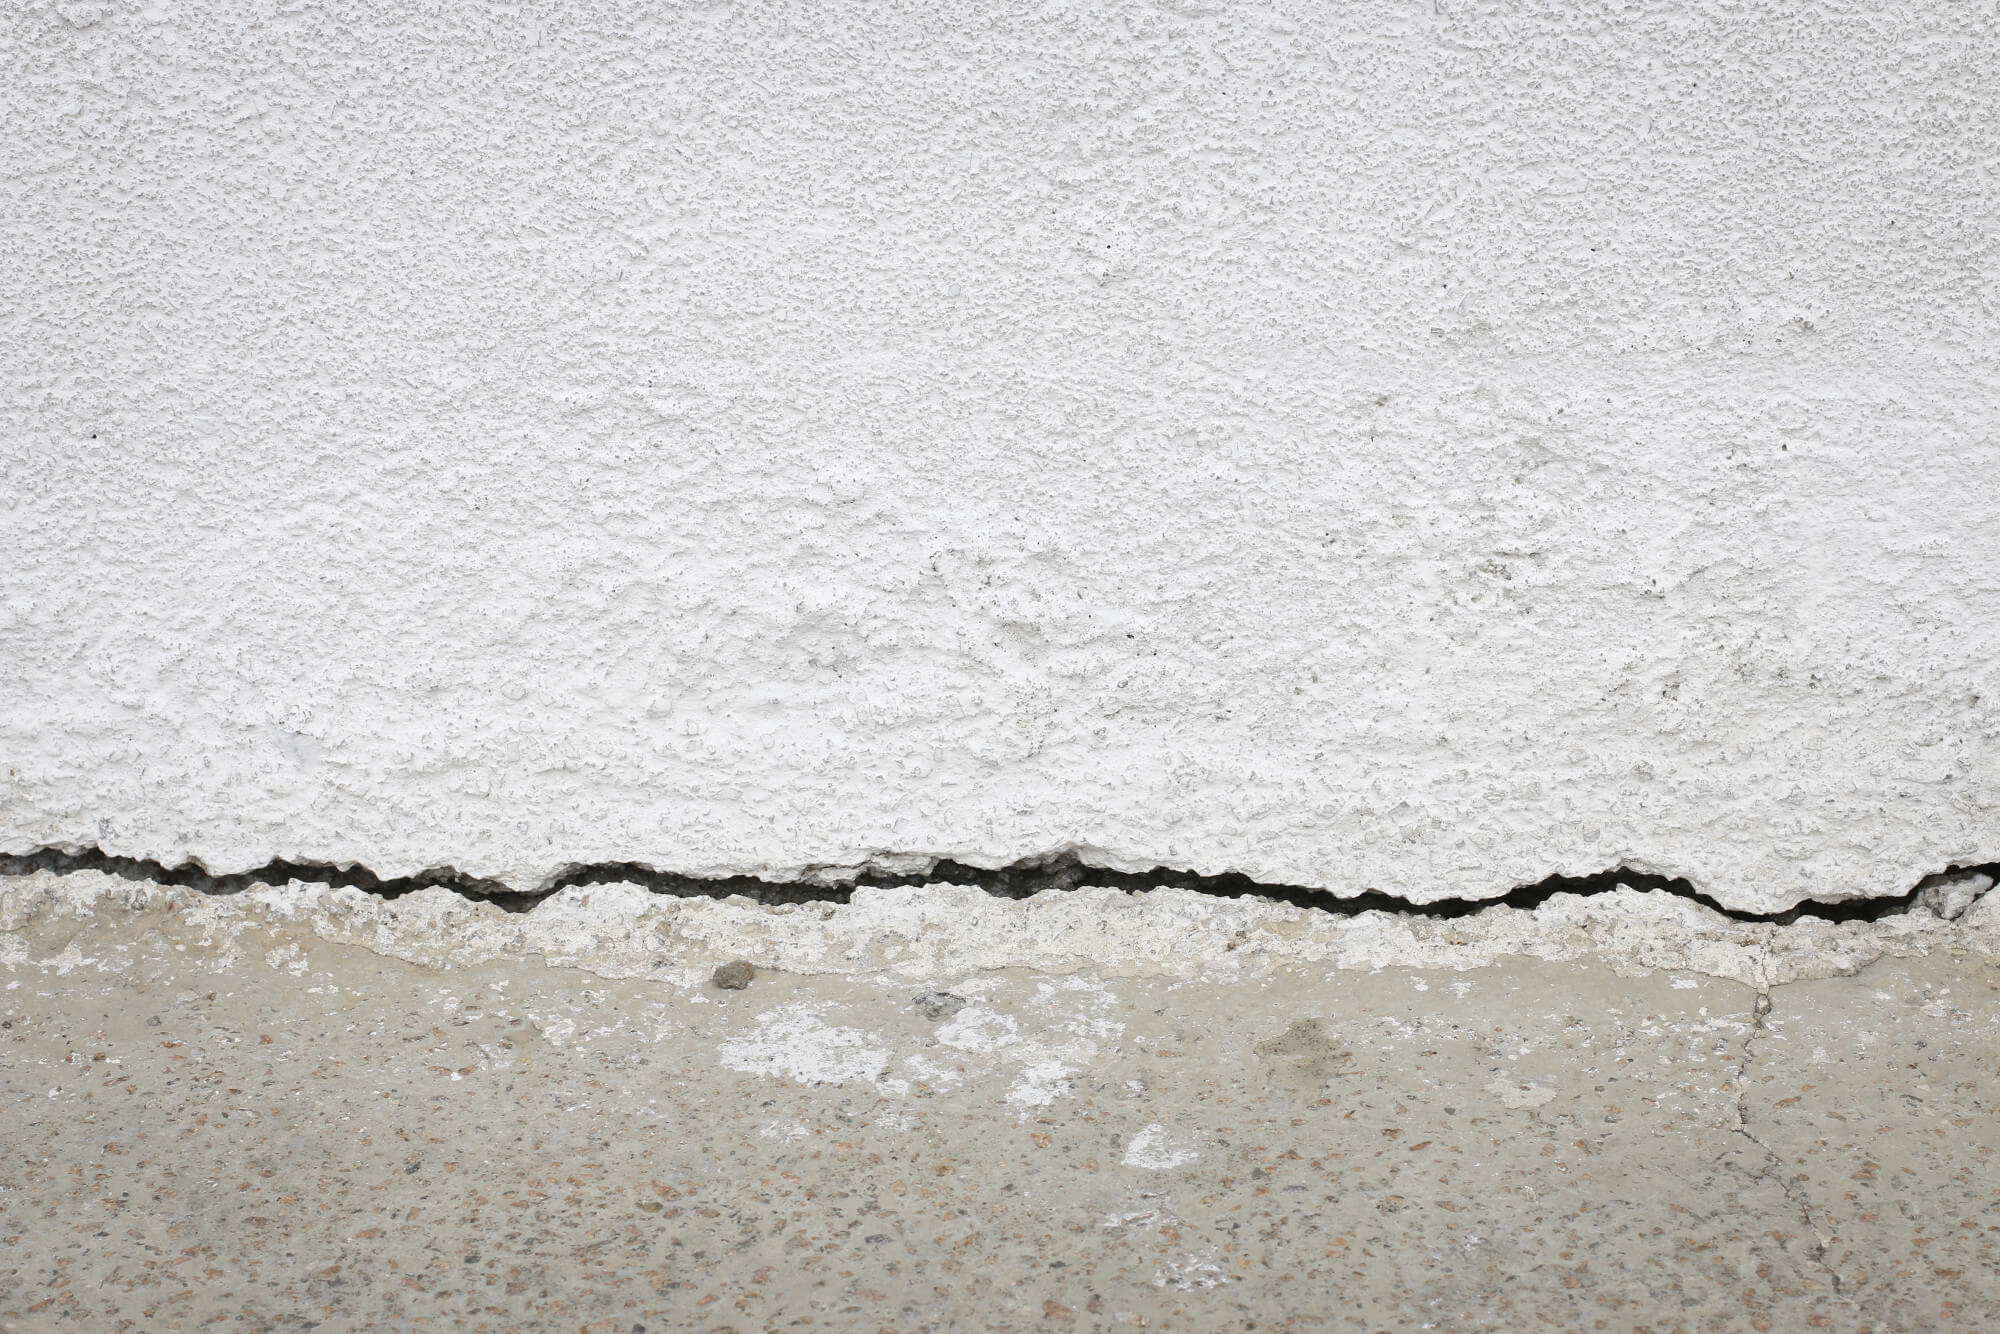 cracked concrete repair